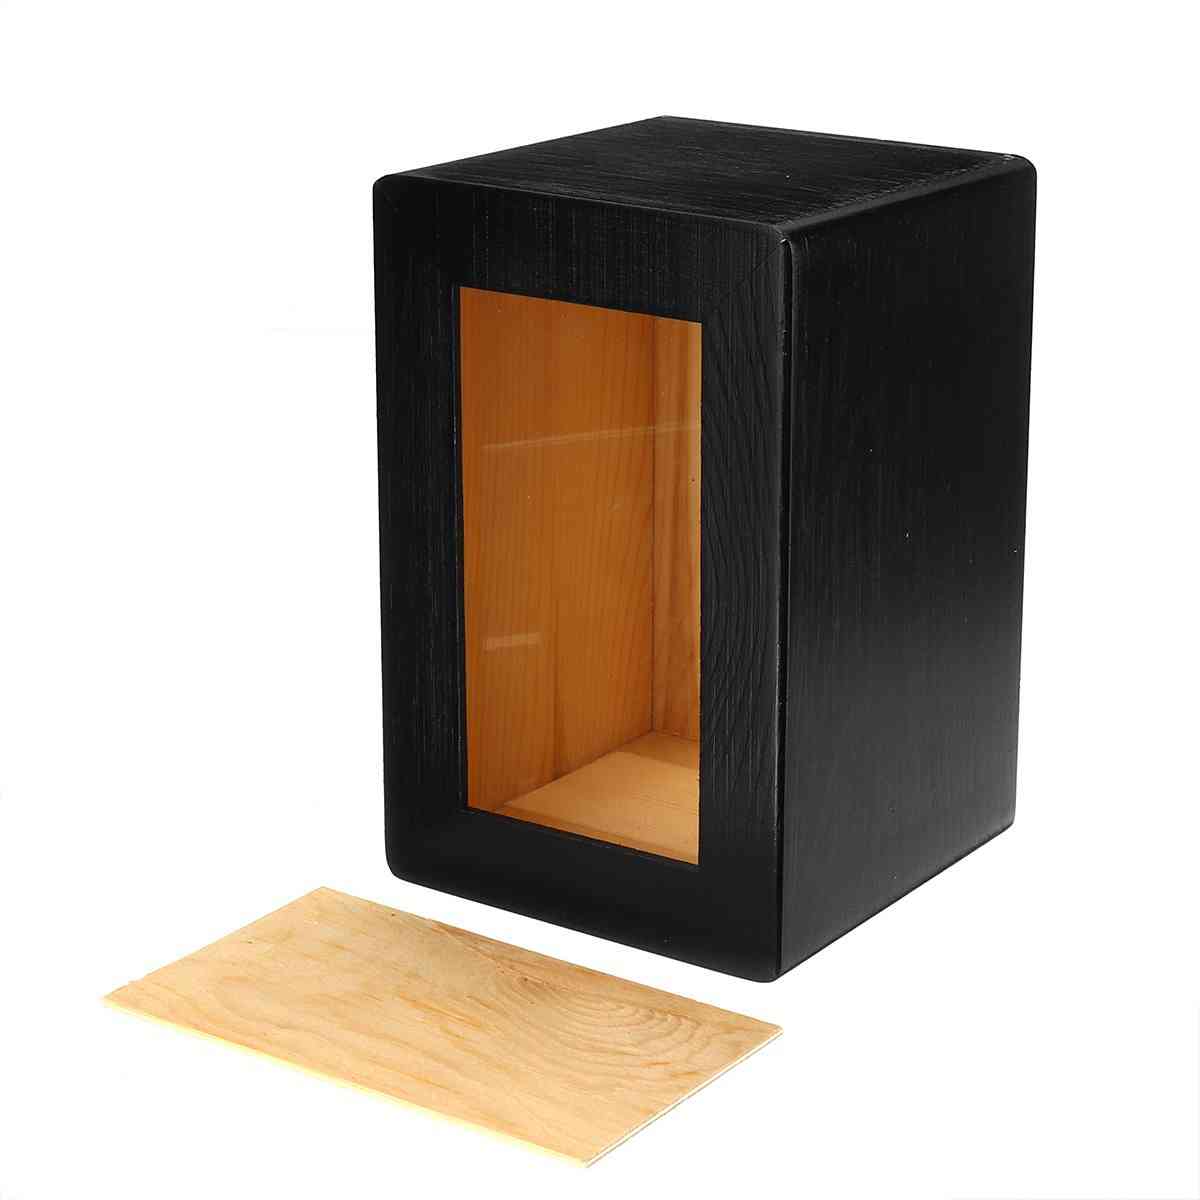 Drewniana urna kot / pies / ptak może umieścić szkatułkę na zdjęcia 16x10,5x10,5cm-